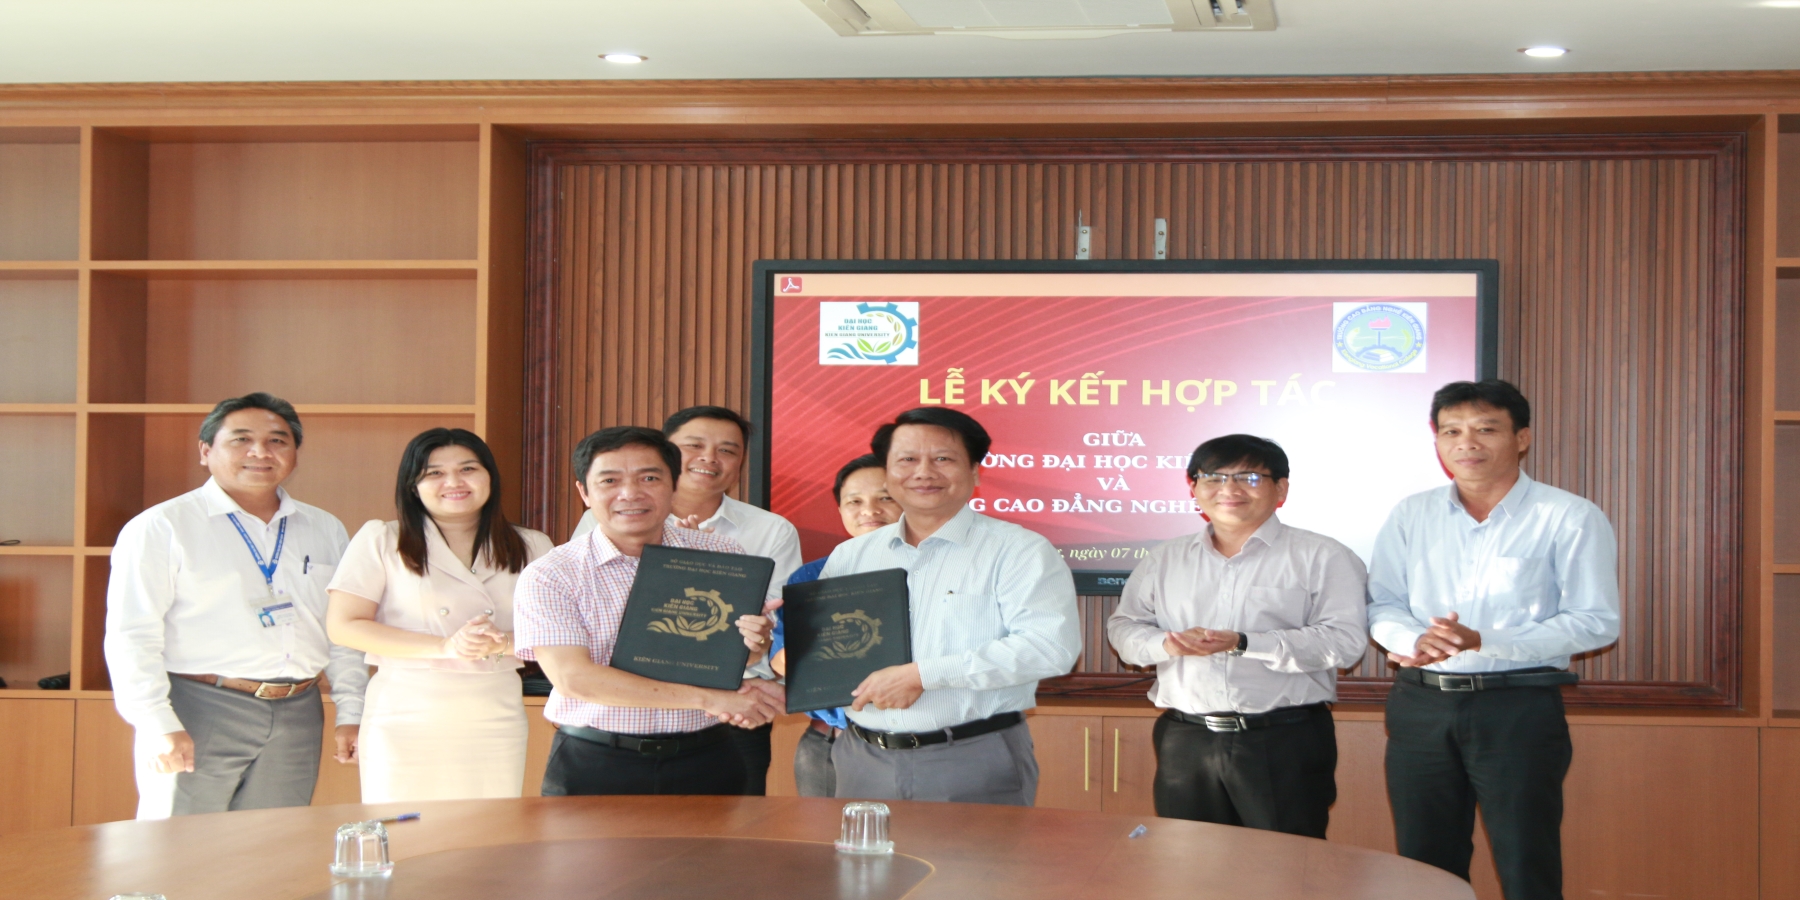 Trường Đại học Kiên Giang và Trường Cao đẳng Nghề Kiên Giang liên kết về giáo dục đào tạo